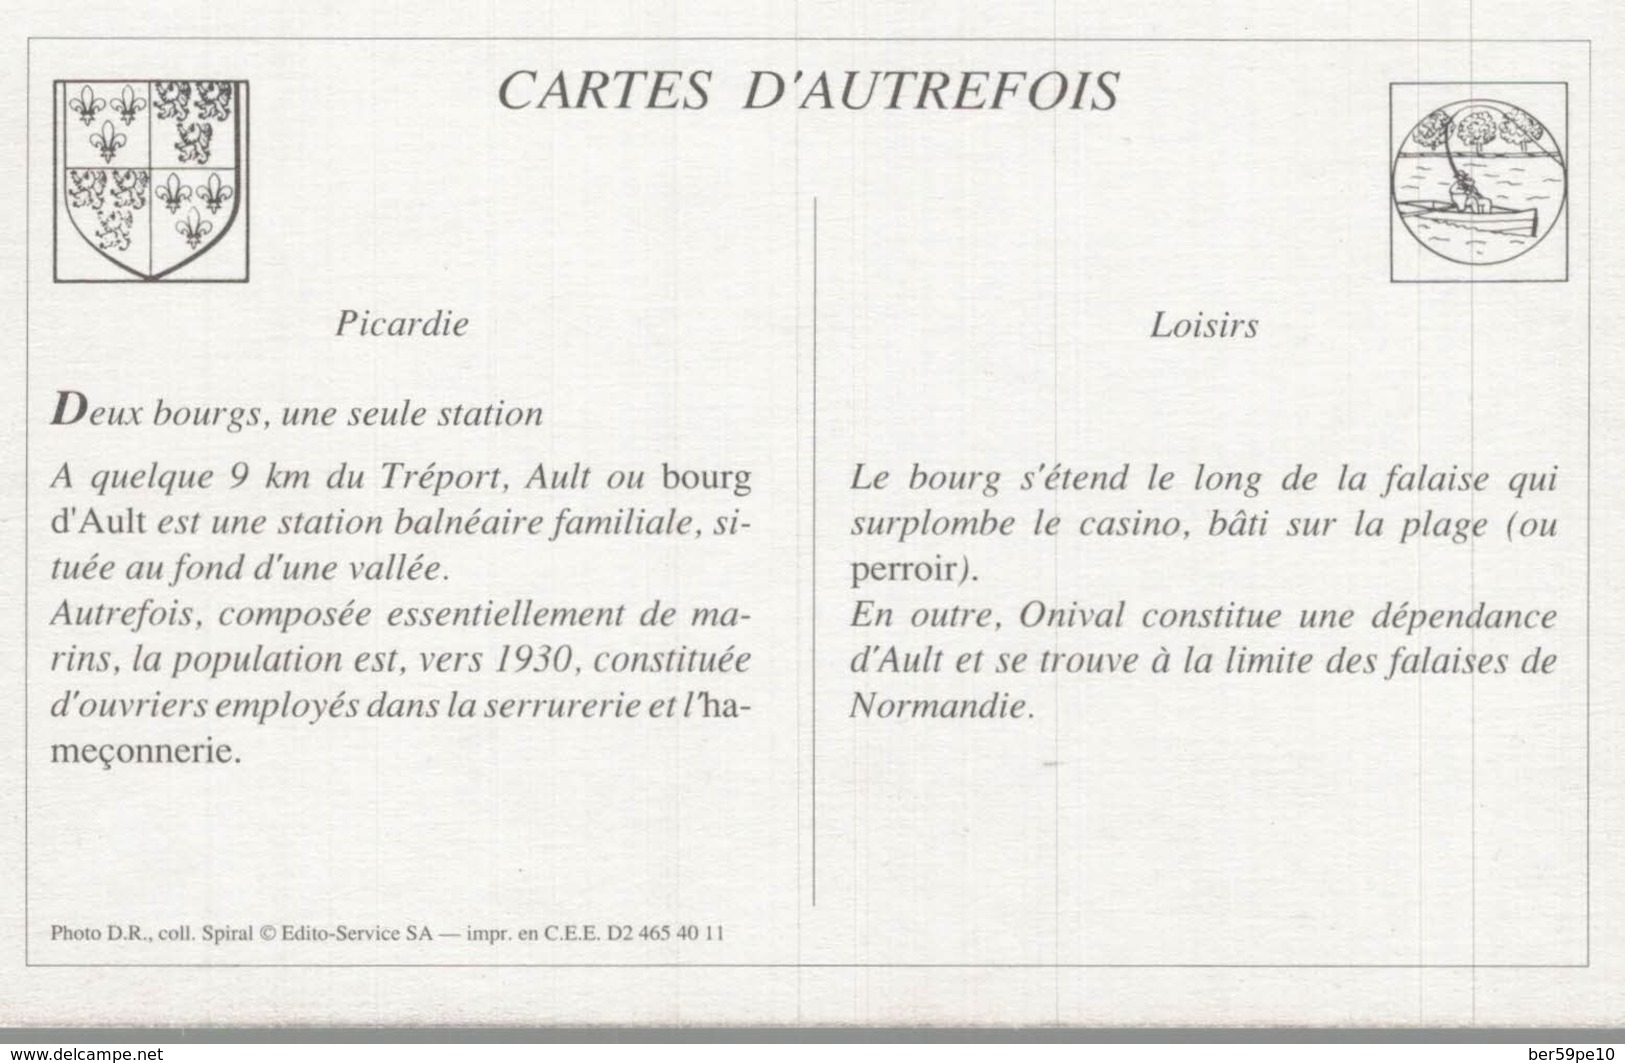 CARTES D'AUTREFOIS  LOISIRS  PICARDIE DEUX BOURGS UNE SEULE STATION - Picardie